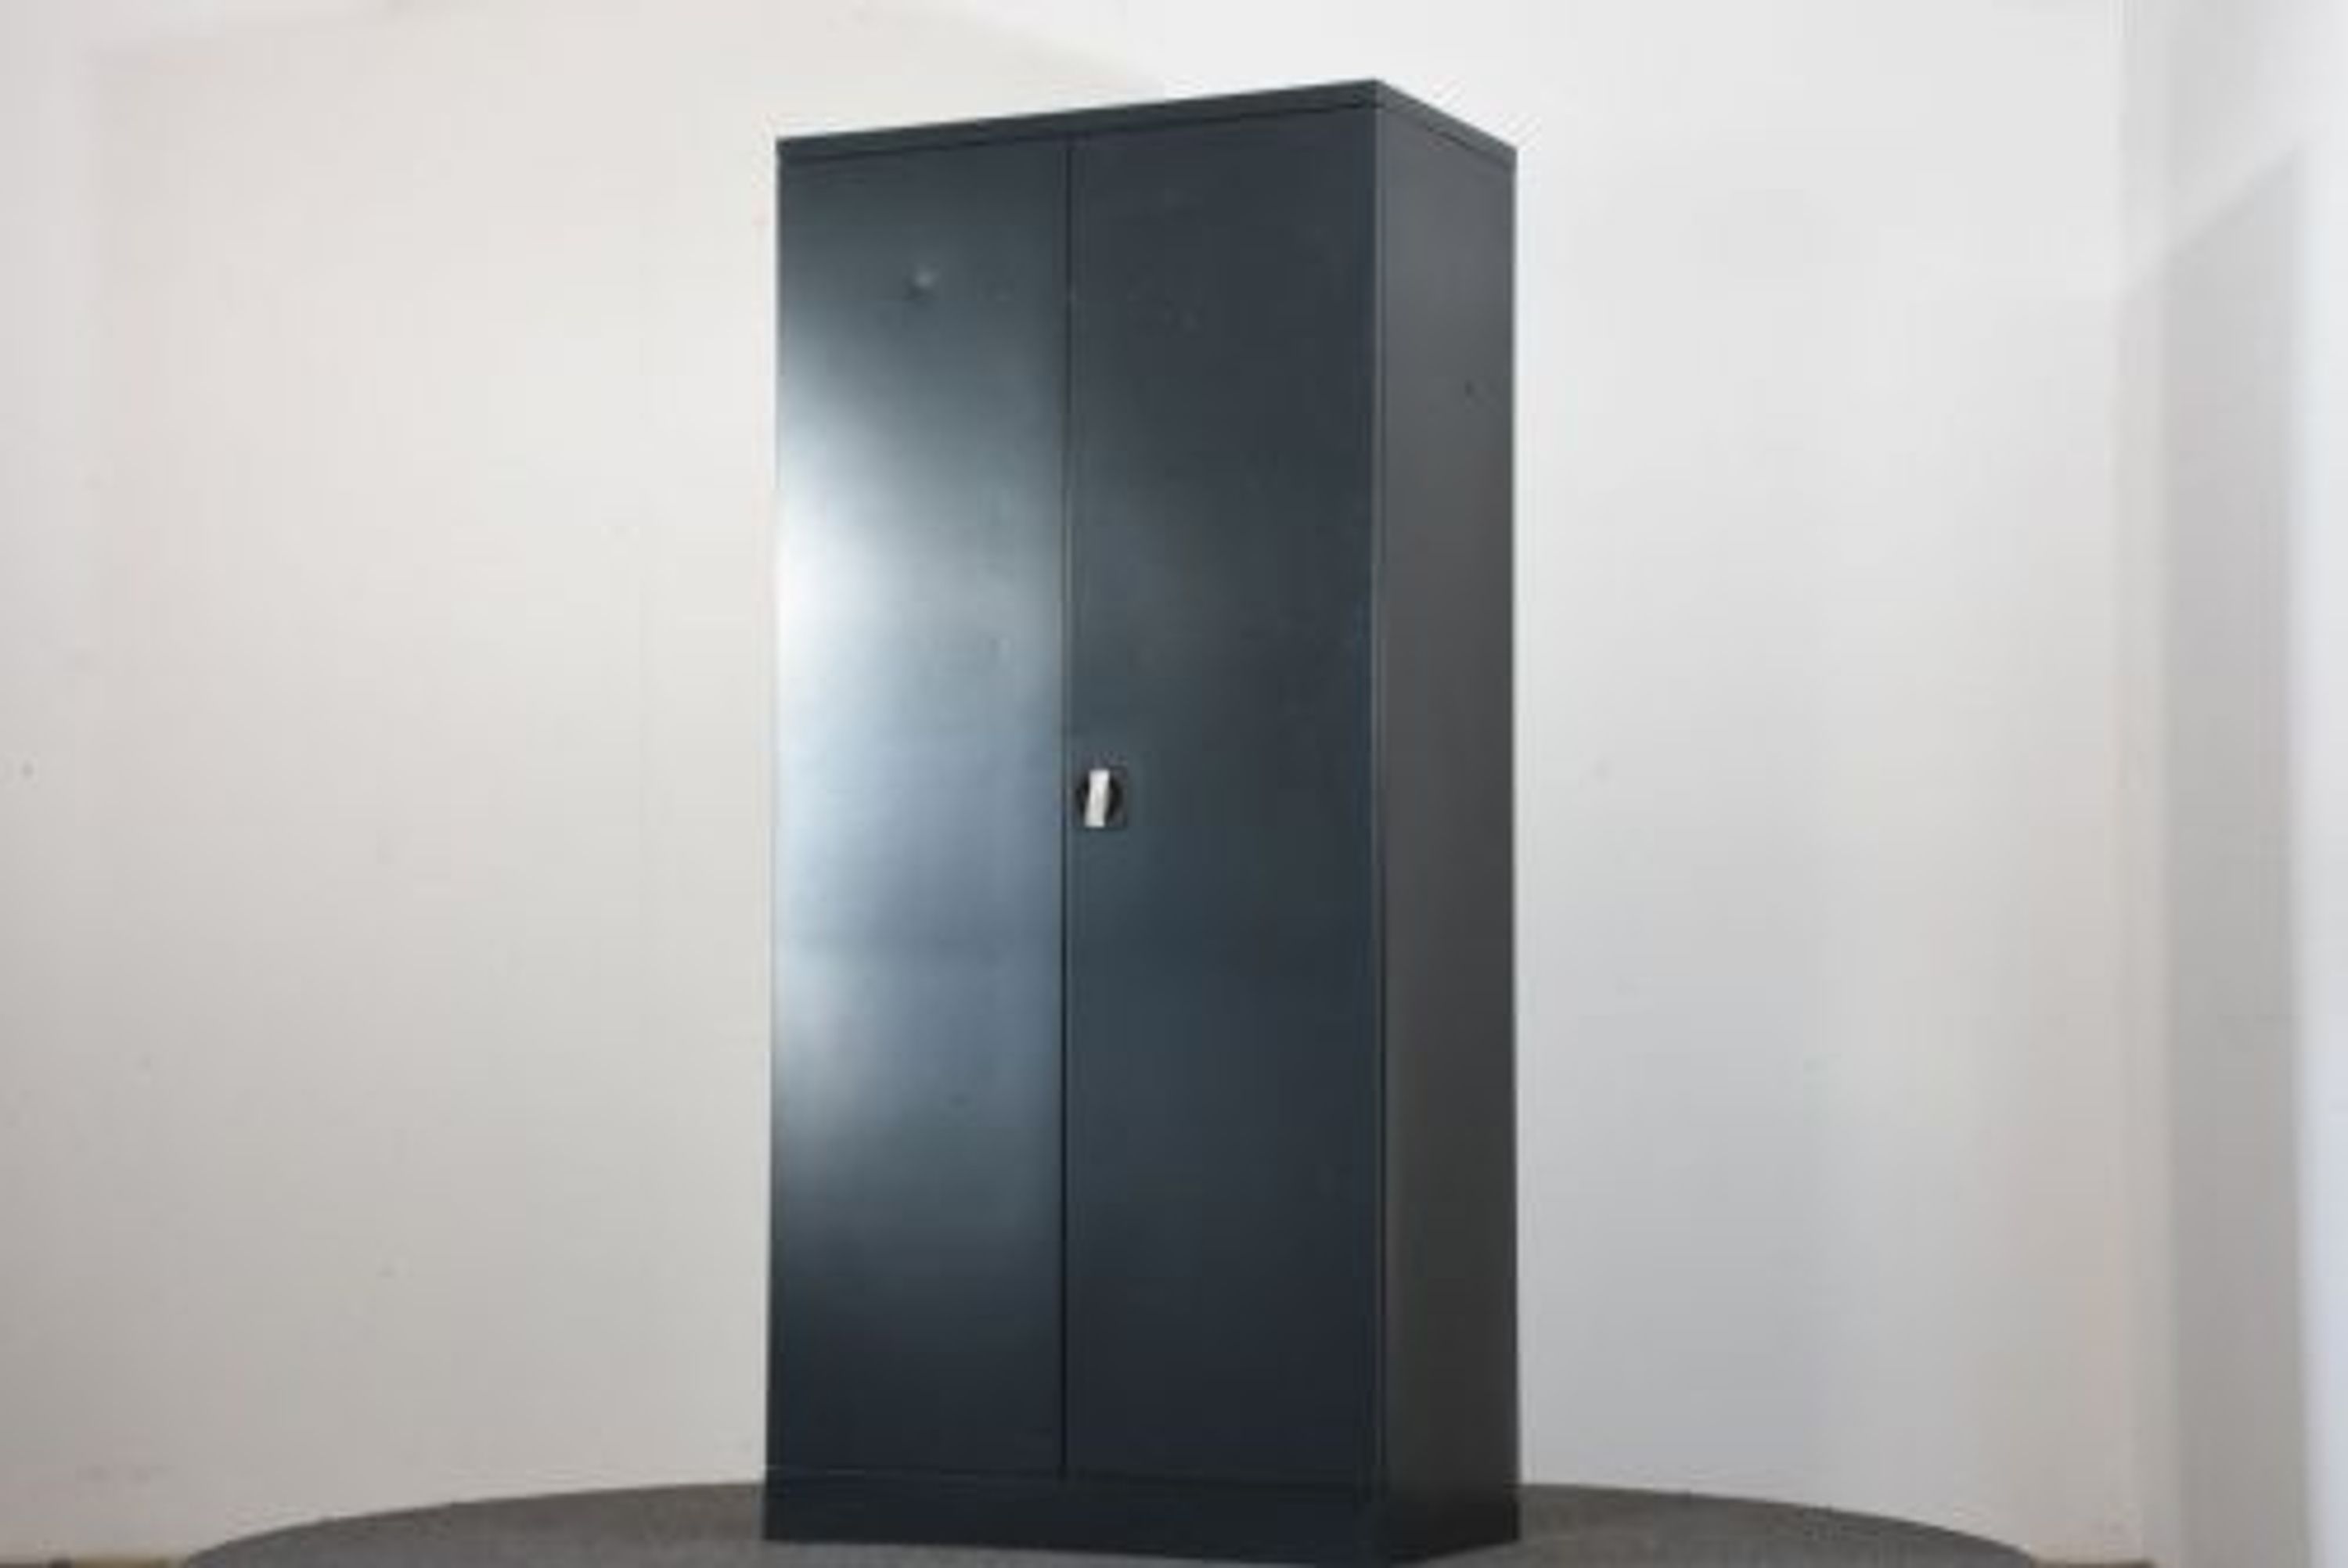 Metallschrank, 195x91,5x50cm, schwarz, gebraucht kaufen bei Hood.de